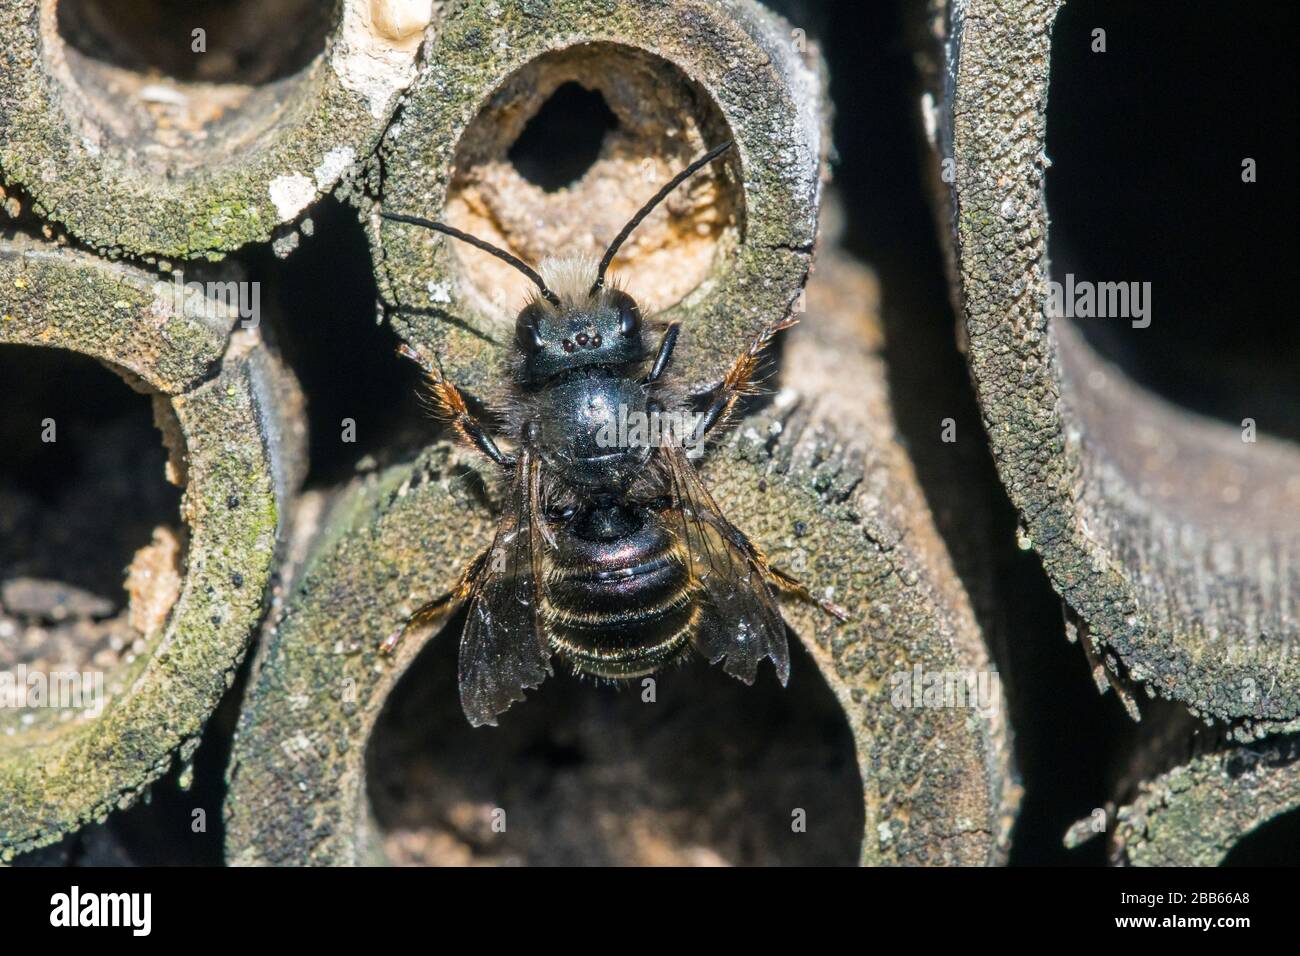 L'abeille maçon bleue (Osmia caerulescens / APIs caerulescens) entre dans le nid dans la tige creuse de bambou à l'hôtel d'insectes pour les abeilles solitaires Banque D'Images